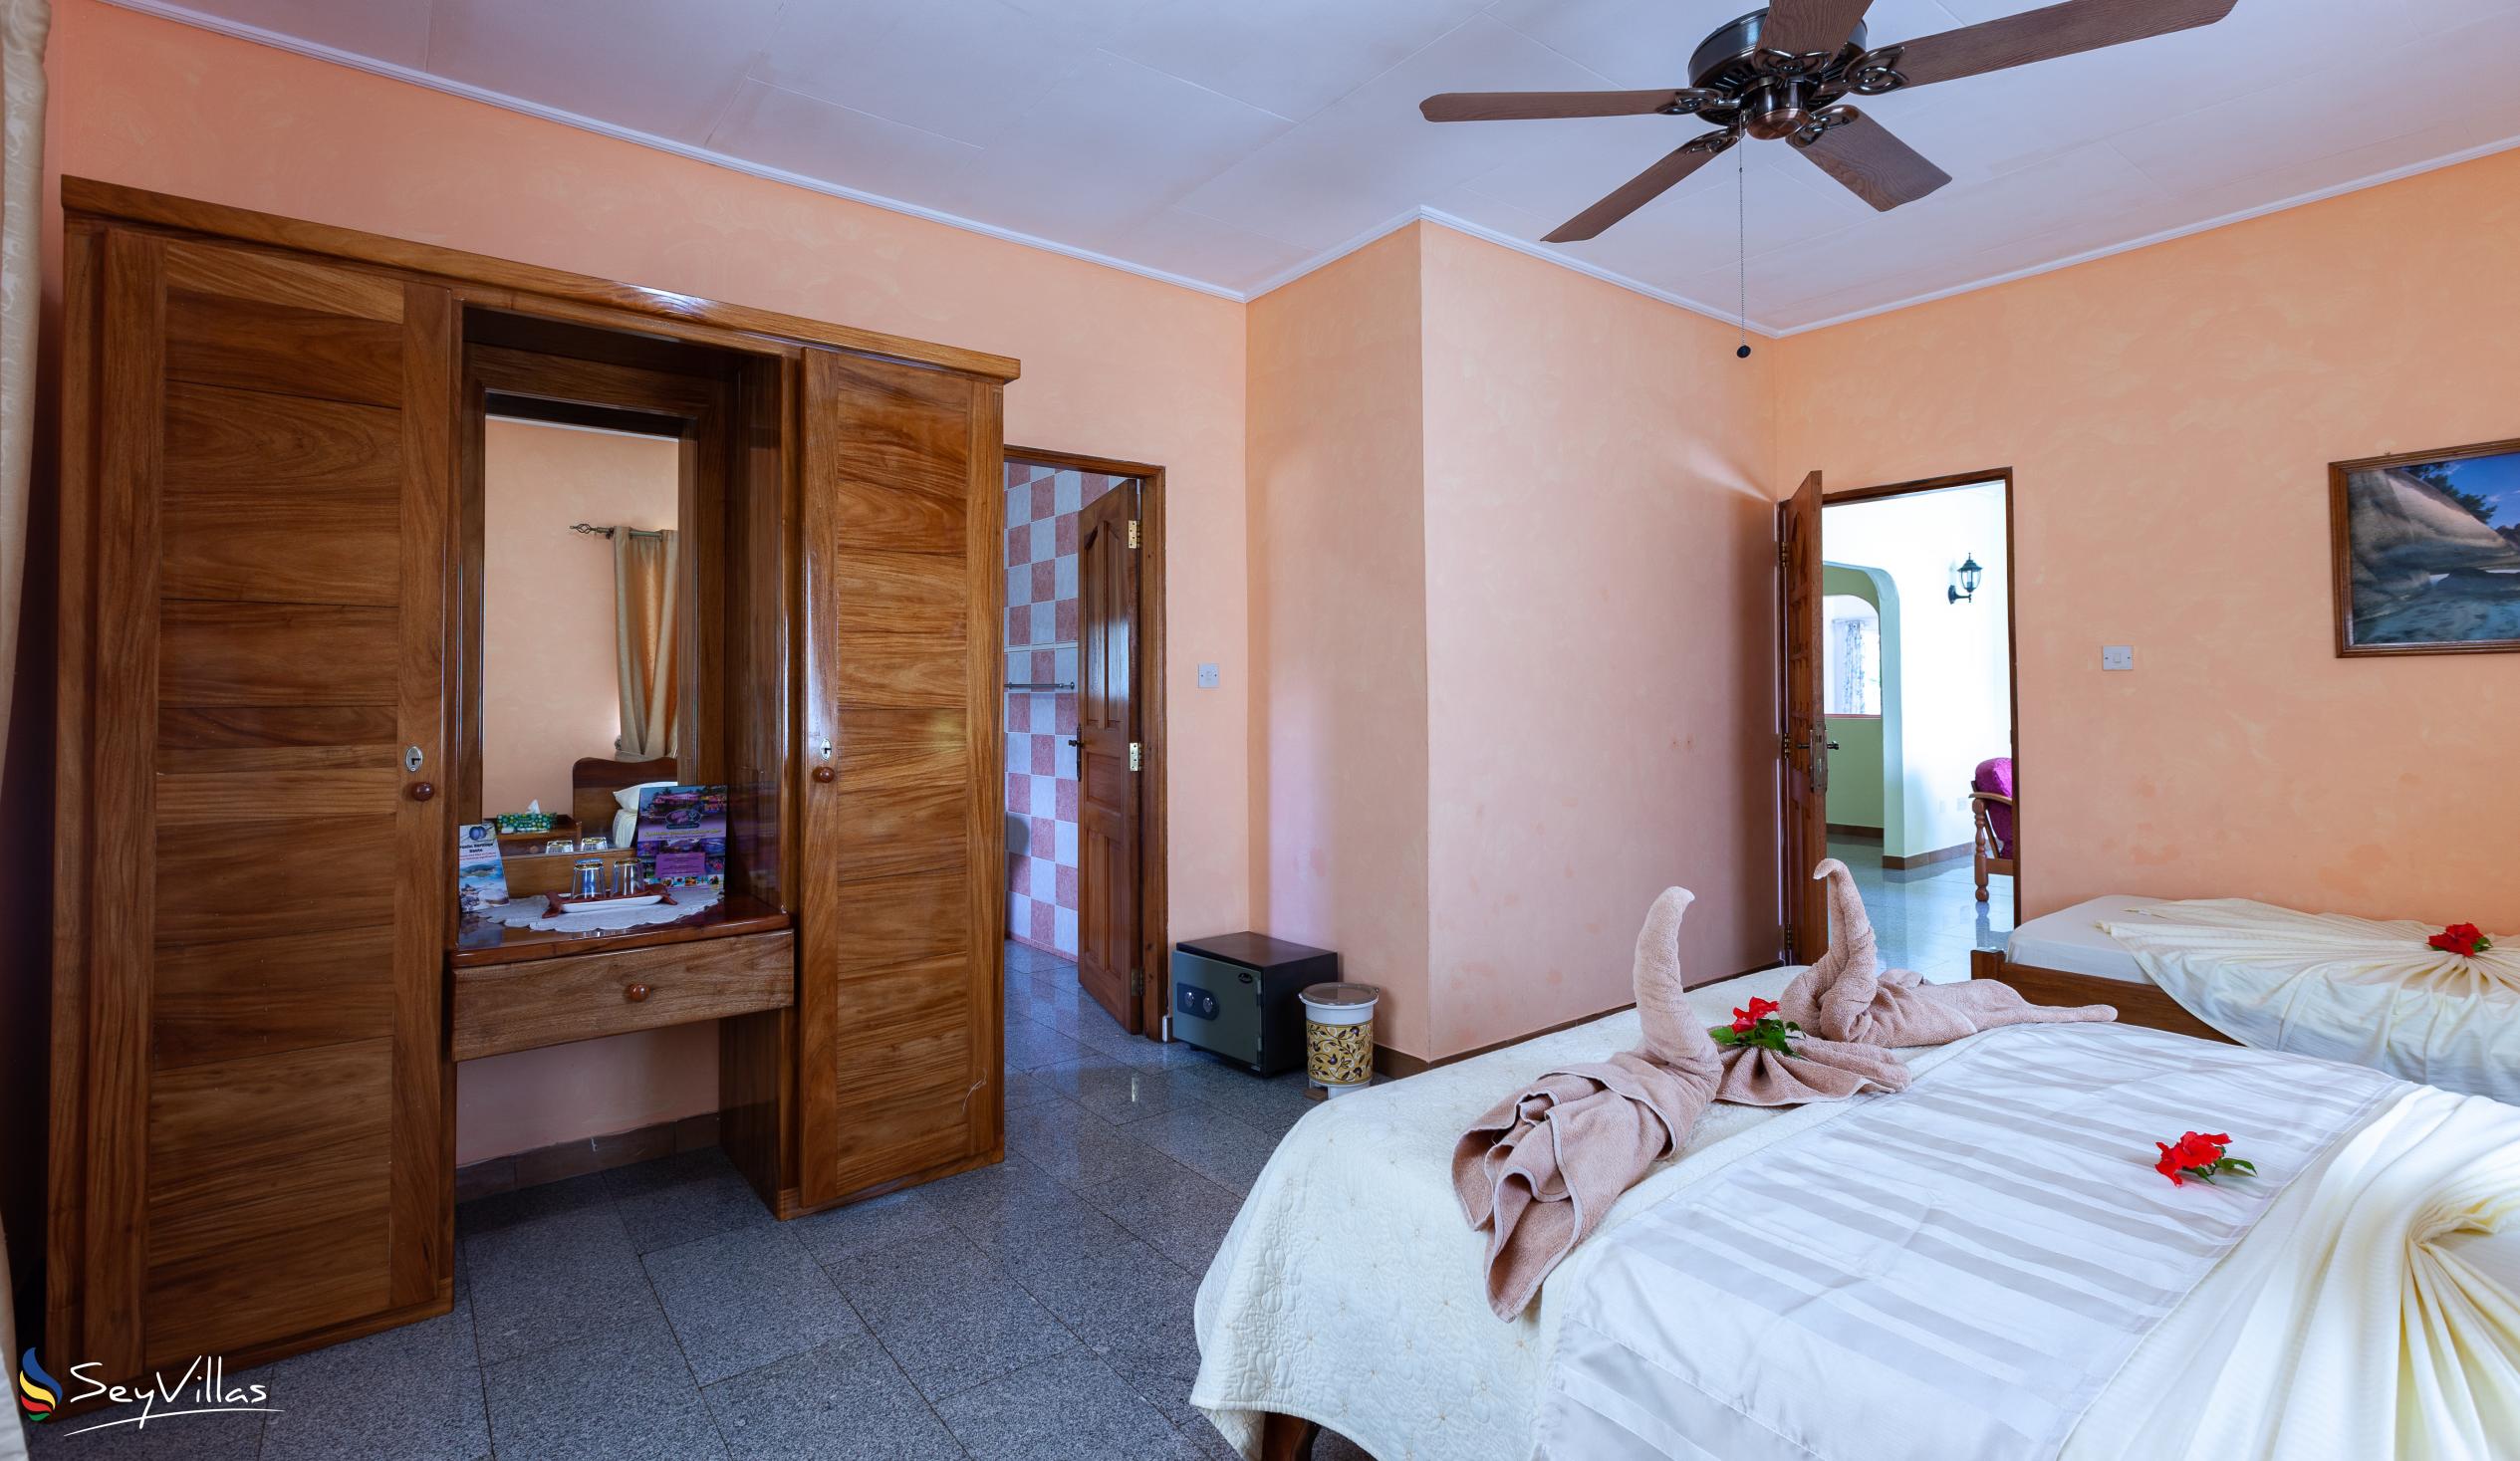 Photo 86: Villa Bananier - Standard Room - Praslin (Seychelles)